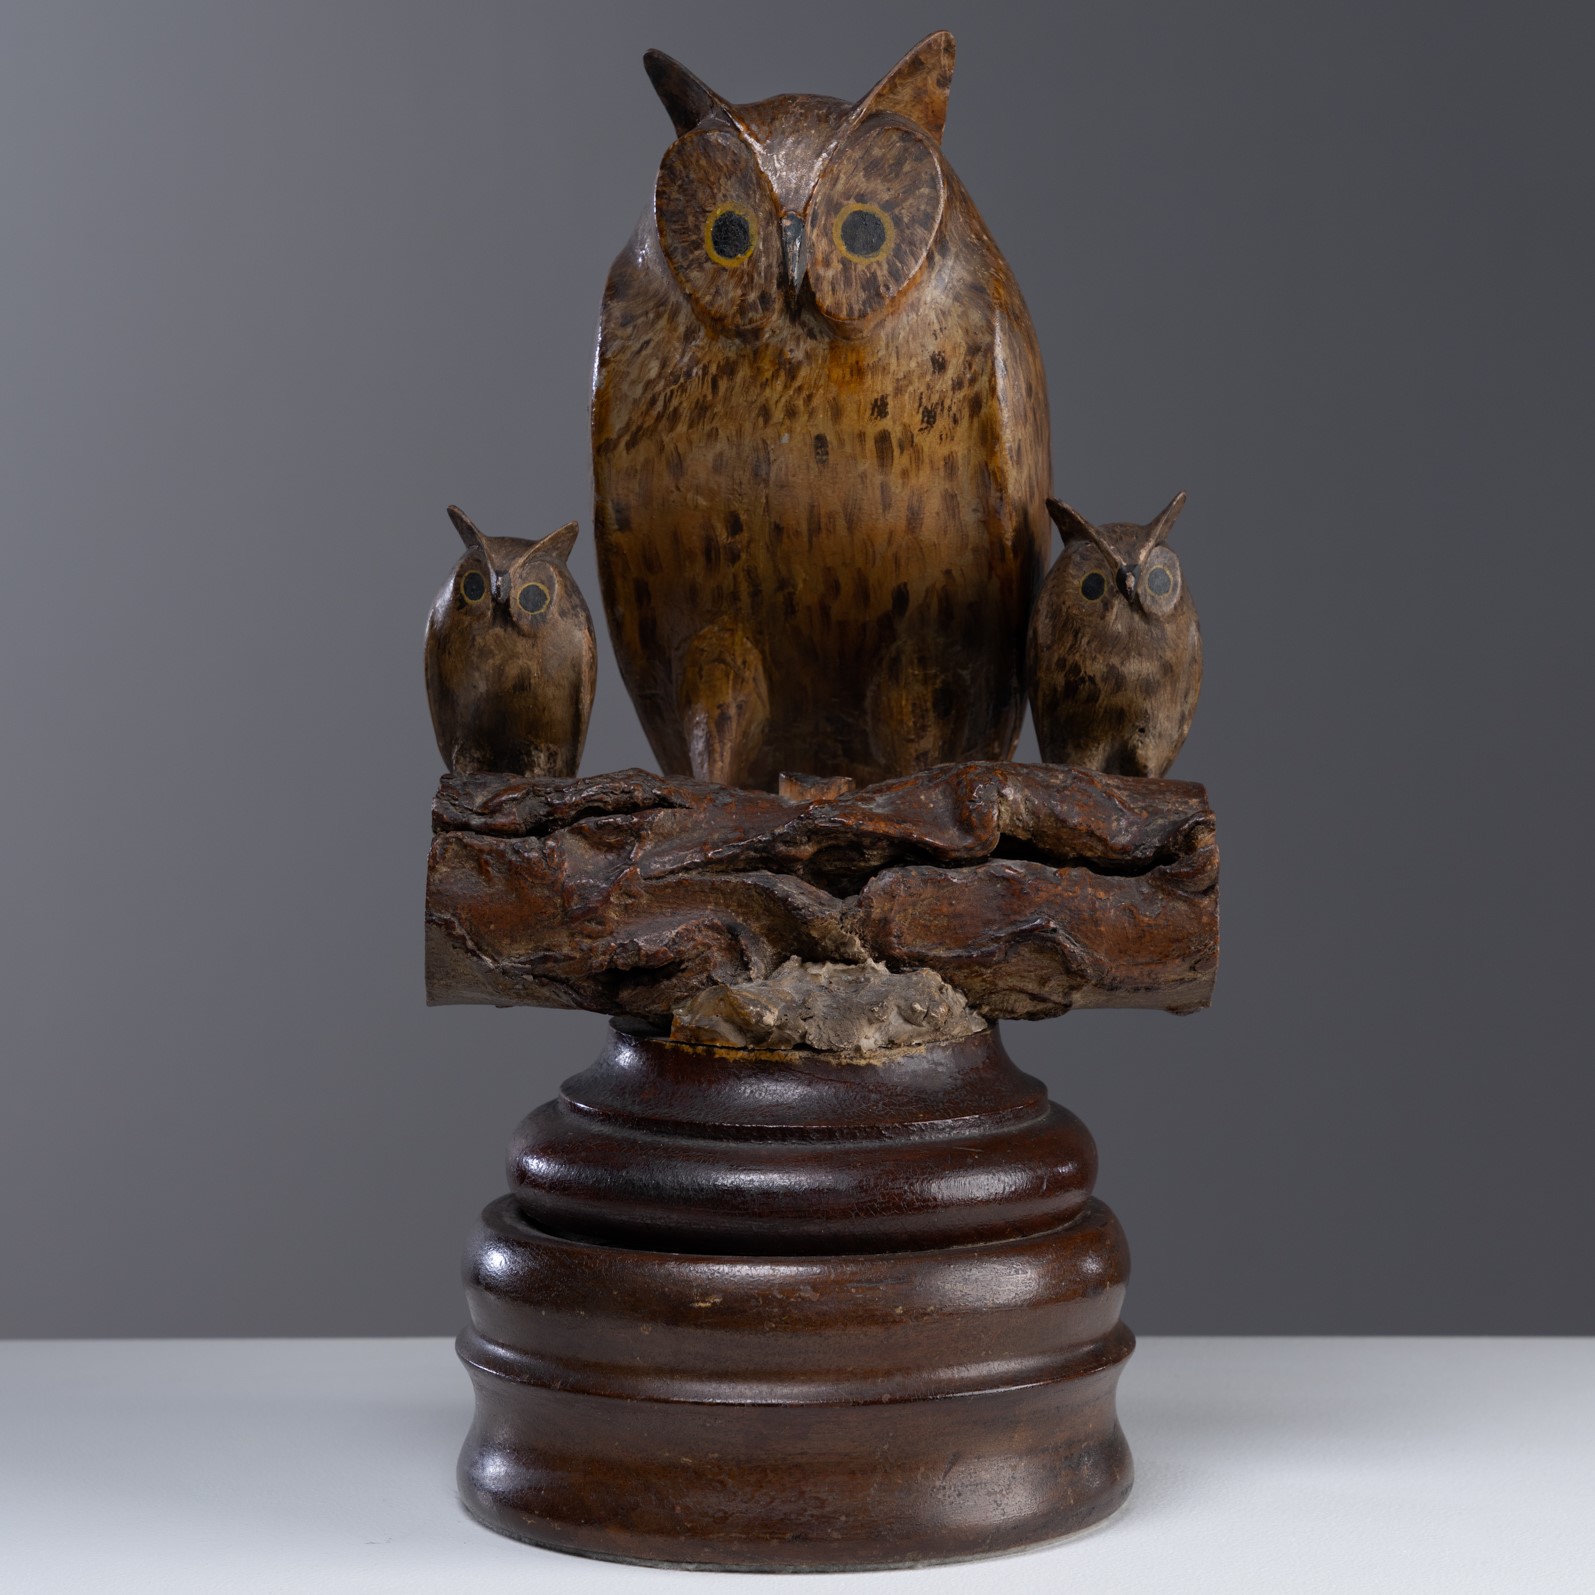 carved folk art owl rel=